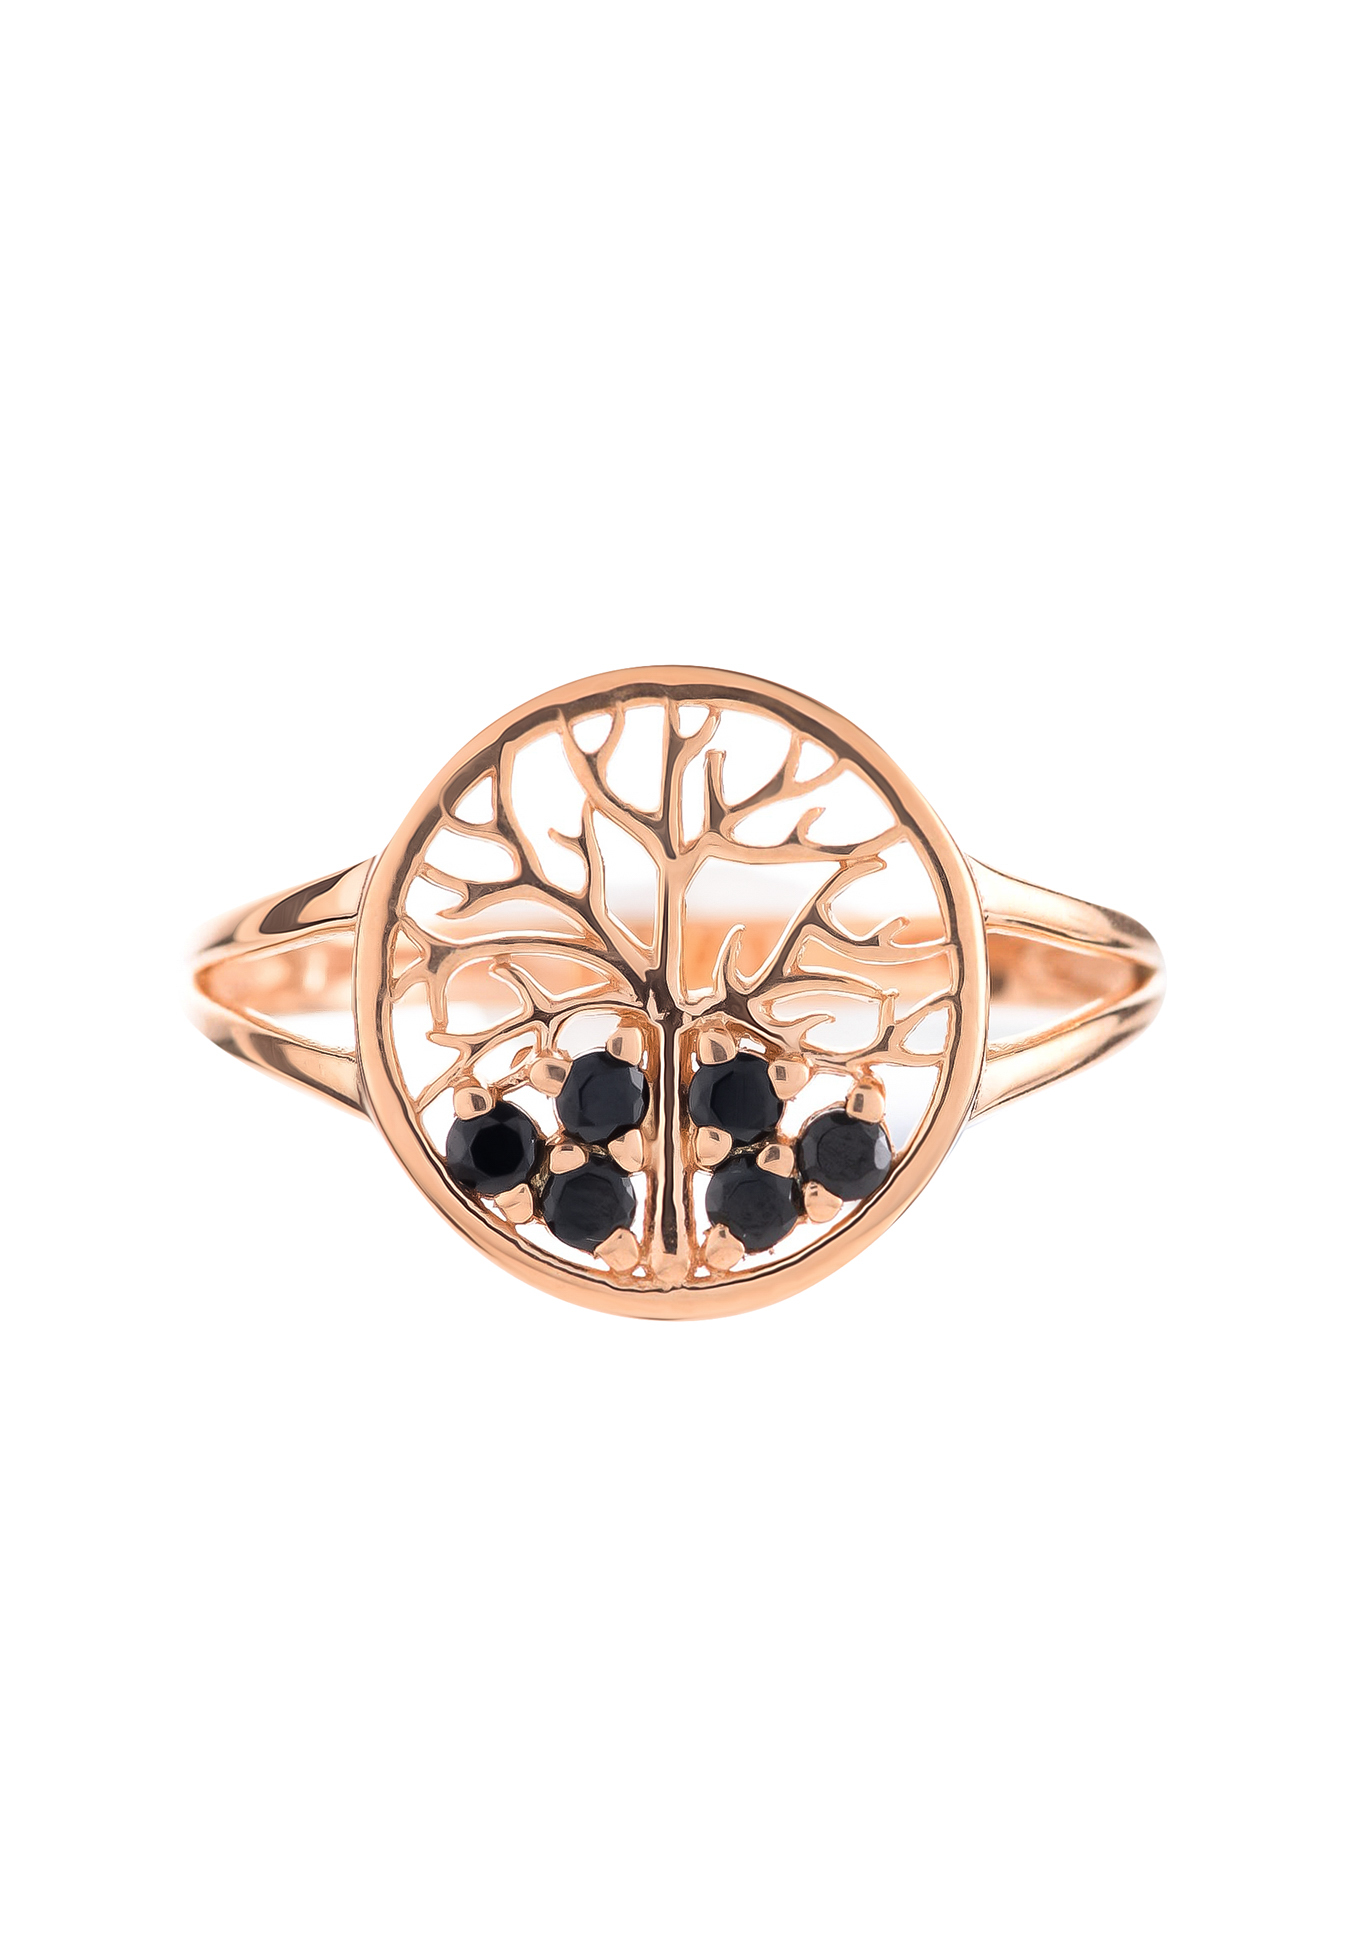 Серебряное кольцо «Дерево удачи» Серебряный Дом, цвет родий, размер 16 сплит шенк - фото 4